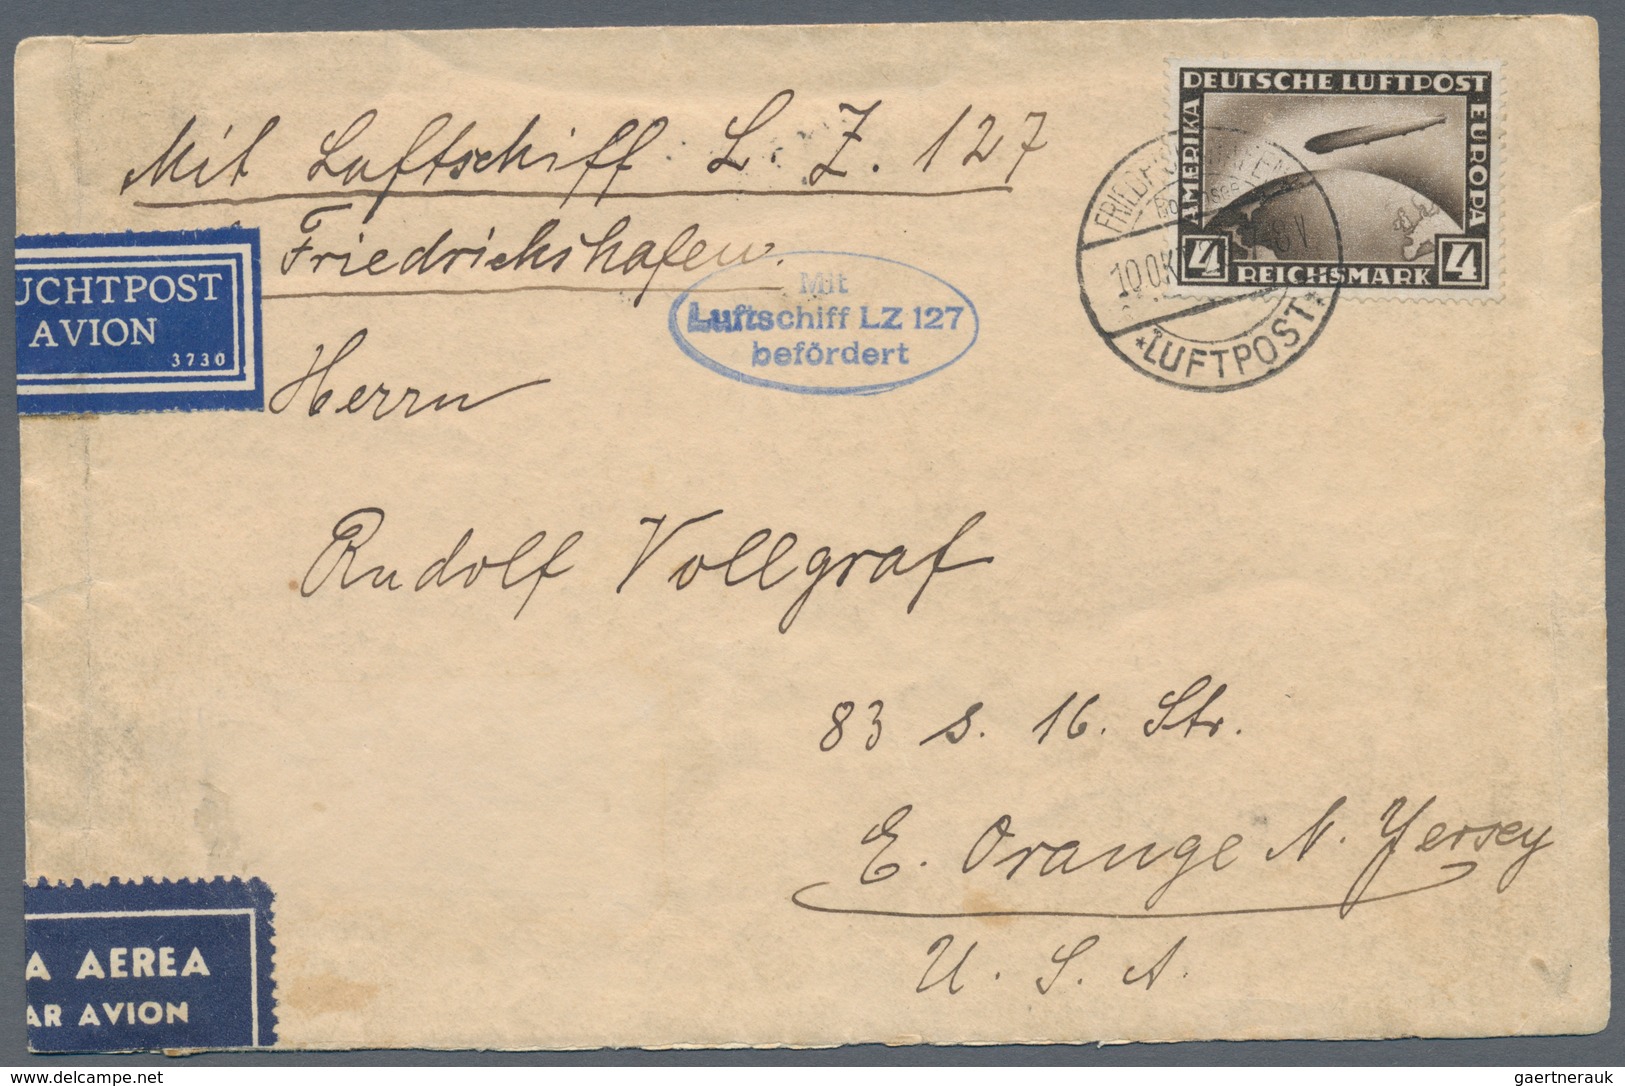 Deutsches Reich - Weimar: 1923/1933, vielseitige Partie von ca. 350 Briefen und Karten, dabei nette